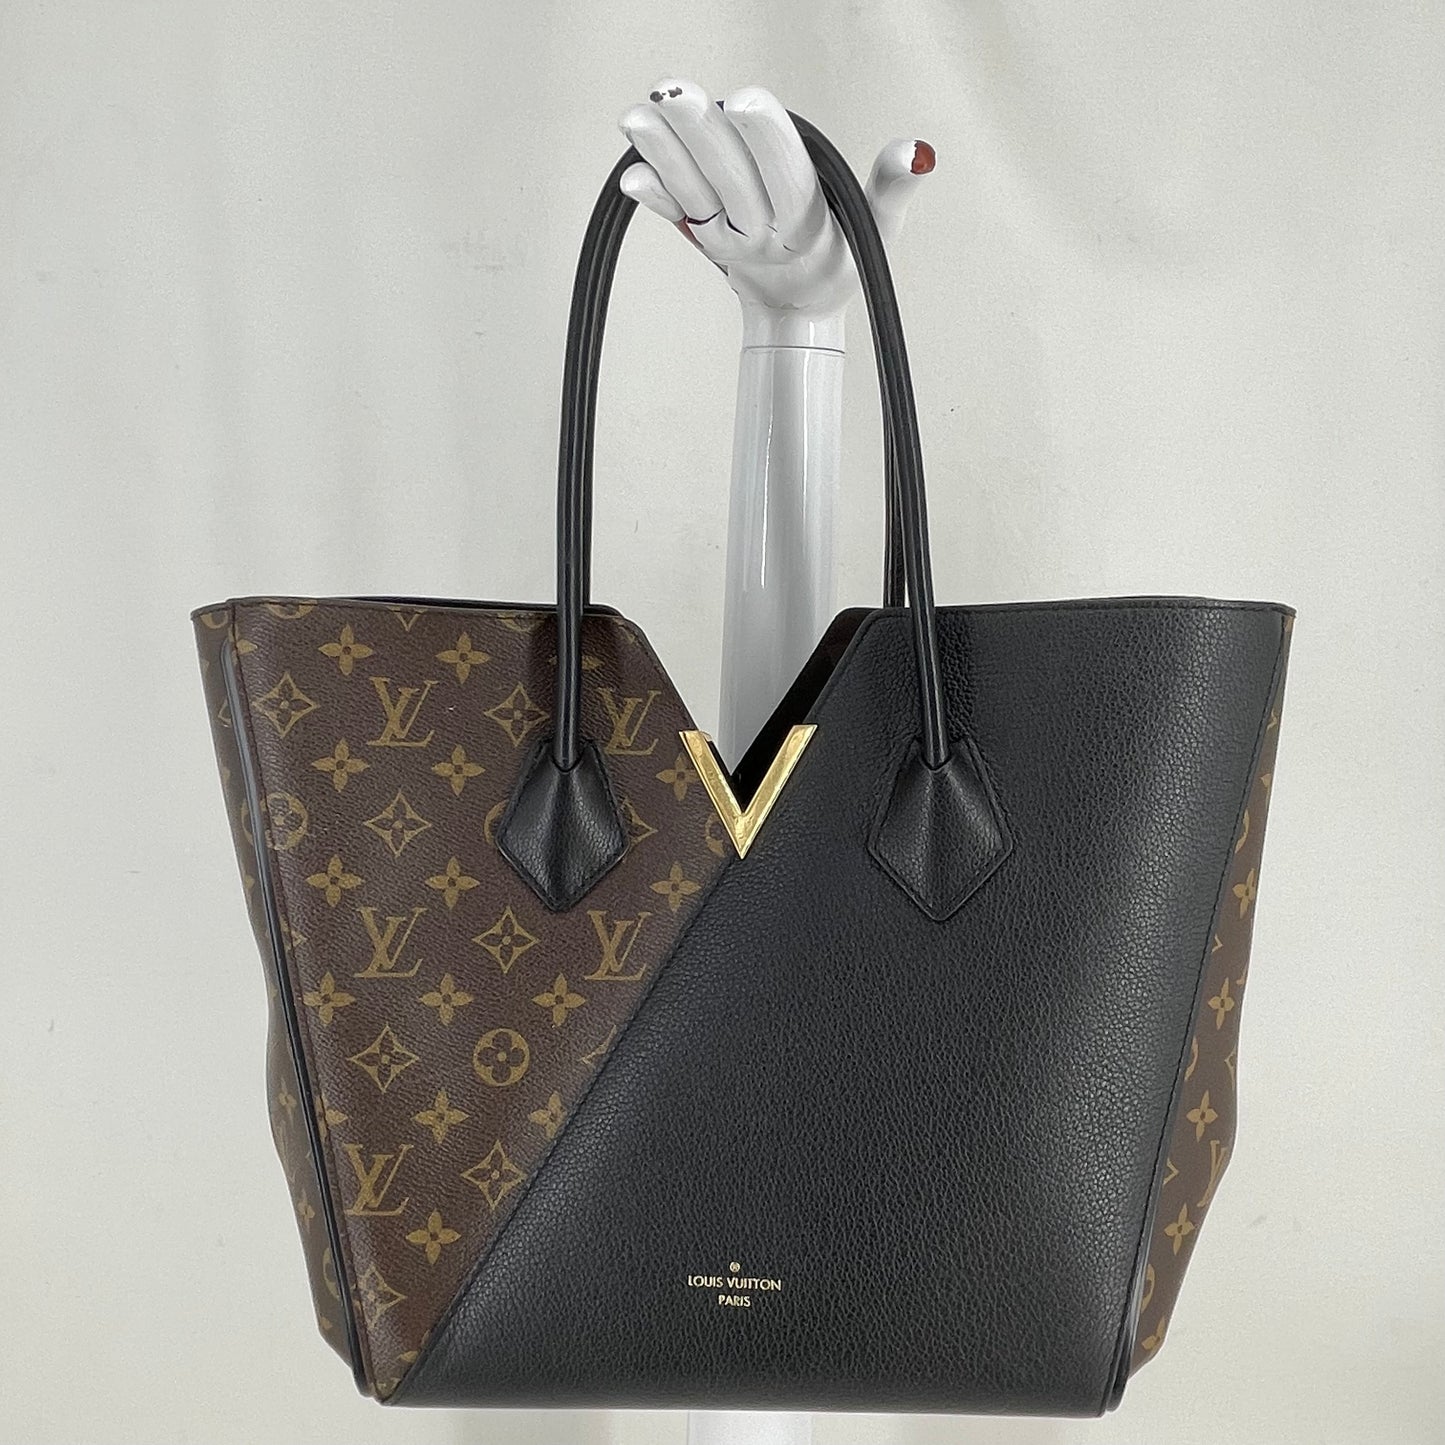 Authentic Louis Vuitton Black/Monogram Kimono Tote Bag